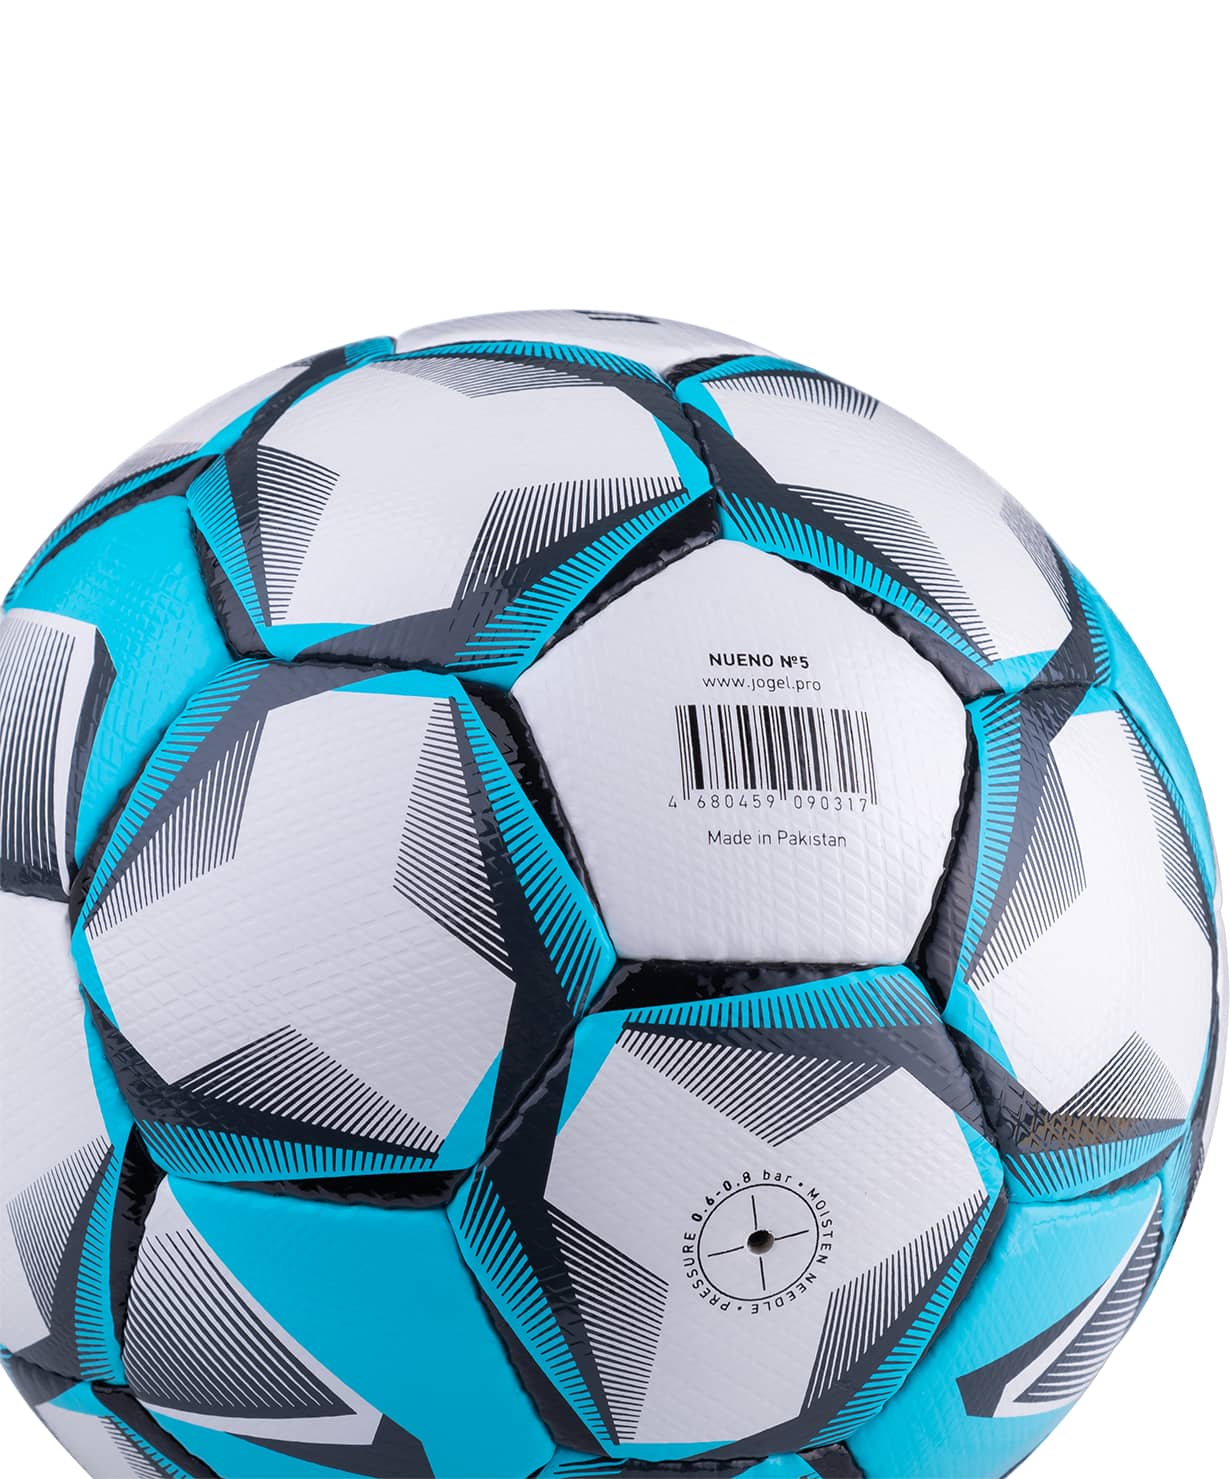 фото Jögel Nueno мяч футбольный белый/голубой/черный размер 5 Football-54 